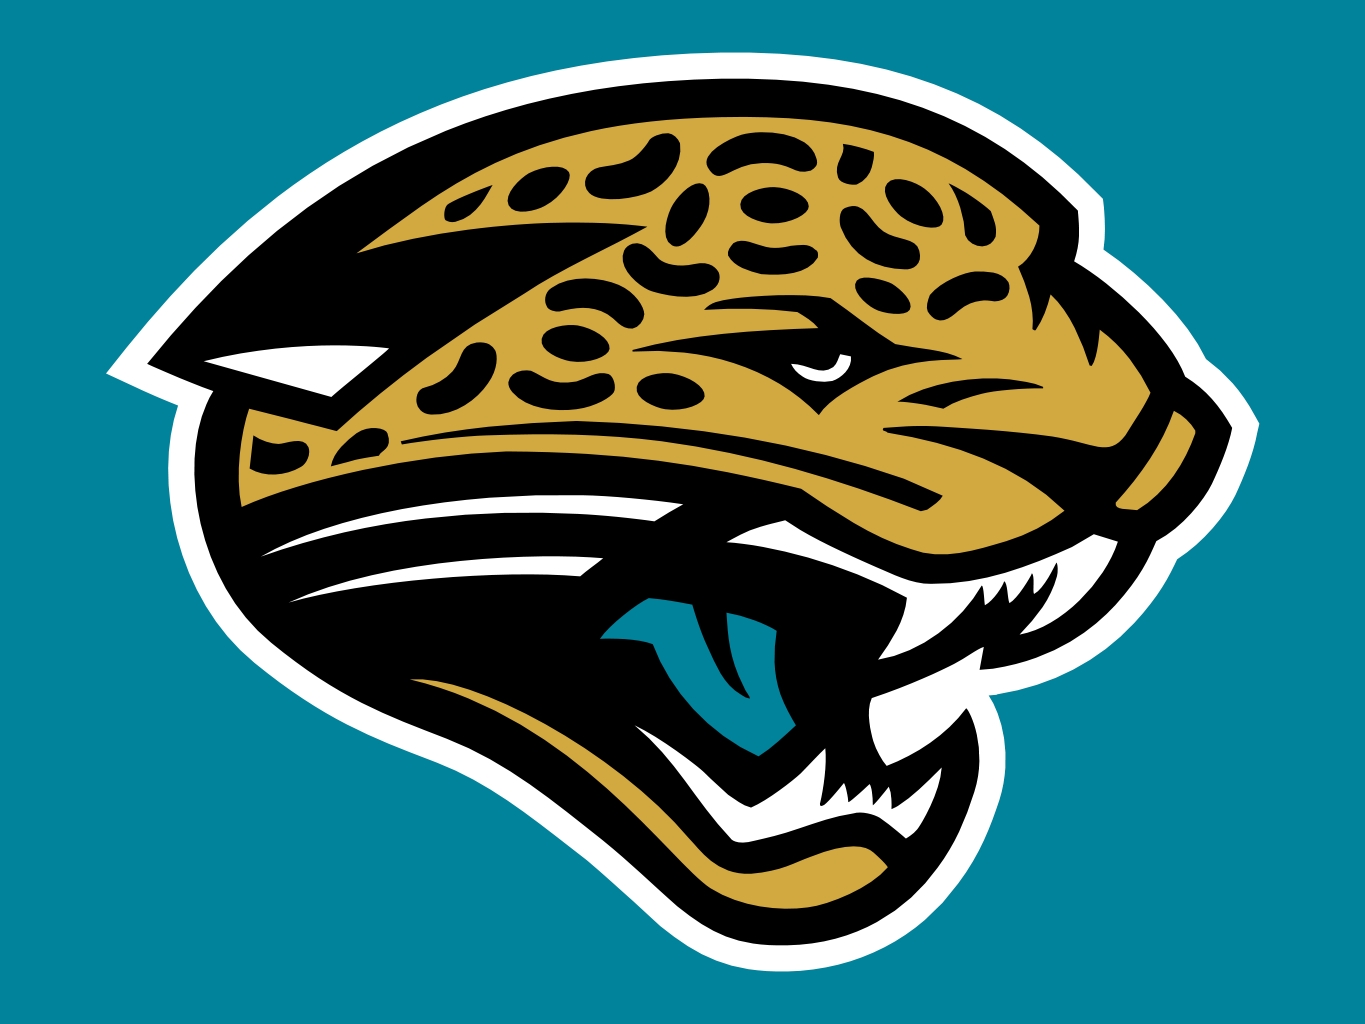 jacksonville jaguars colours